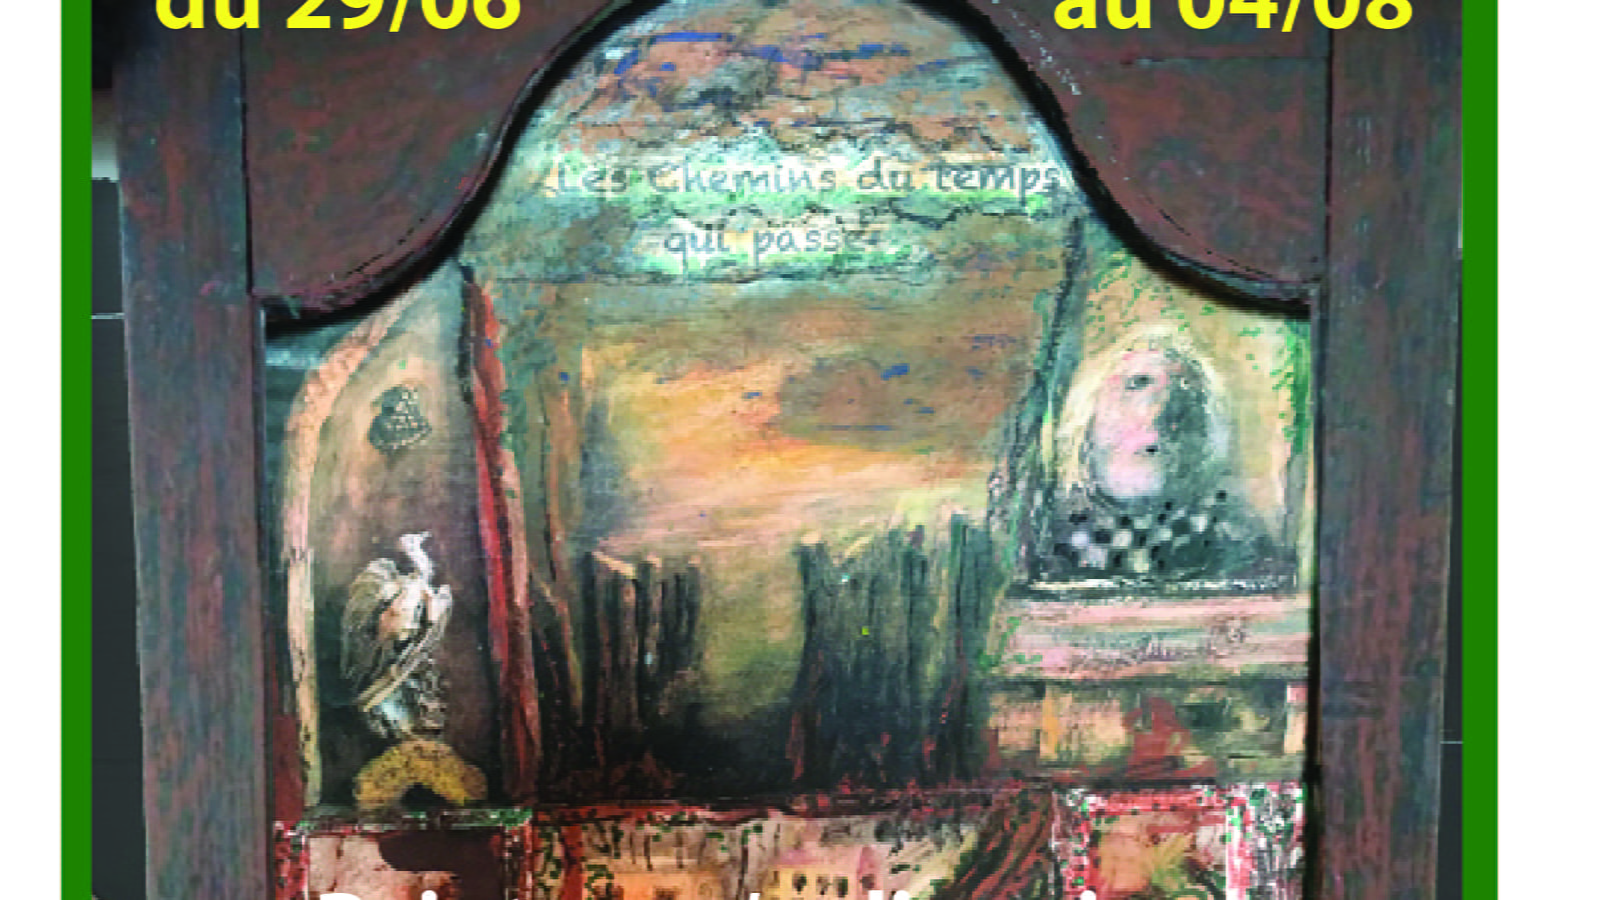 Die MOIZIARDs Andrée und Jean. Ausstellung von Gemälden und Reliquienschreinen. 'Les chemins du temps qui passe' (Die Wege der vergehenden Zeit). Einzigartig...